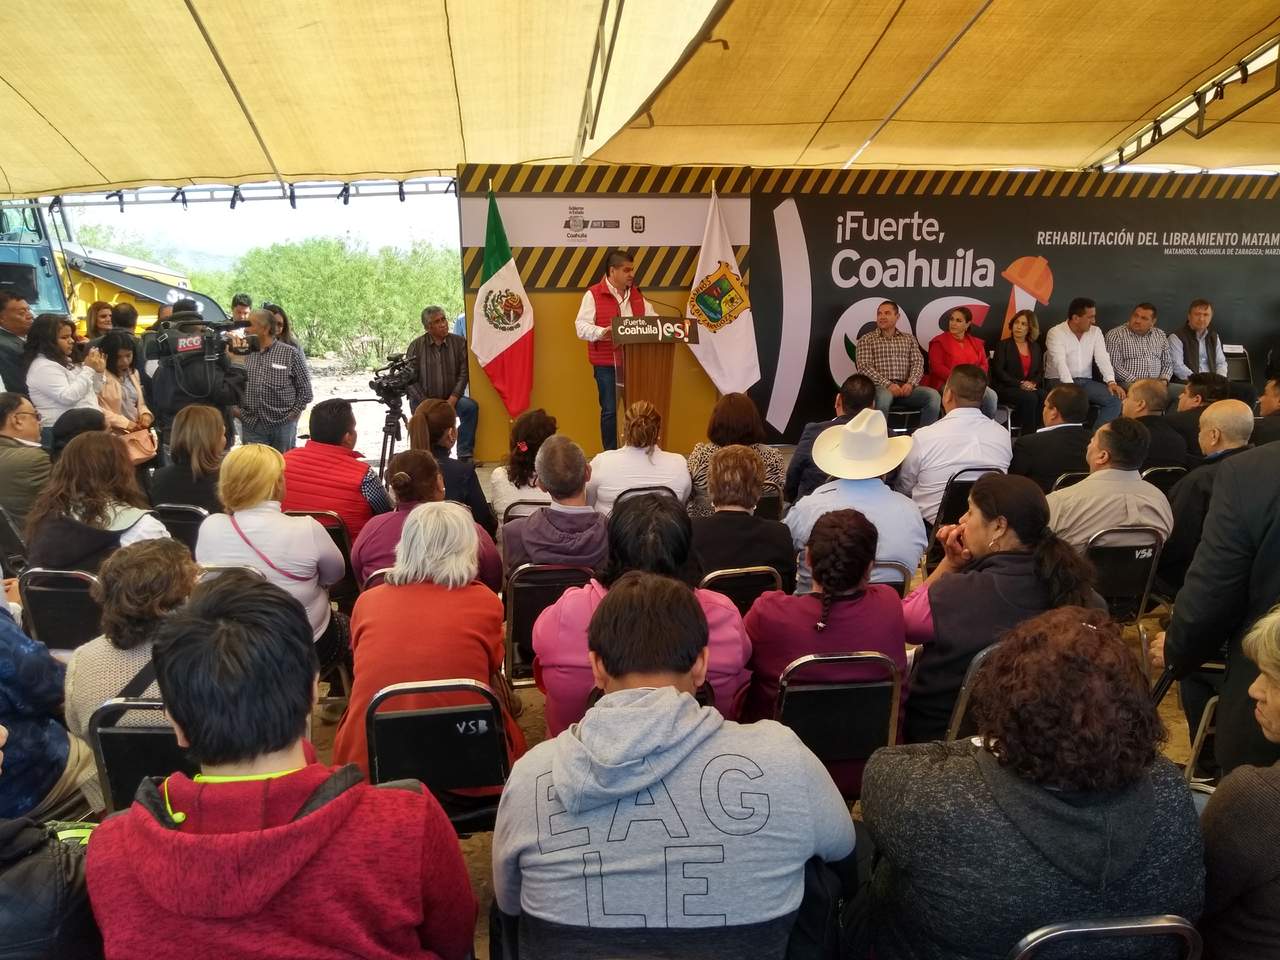 Arranca obra de rehabilitación del libramiento Matamoros-Torreón. Noticias en tiempo real